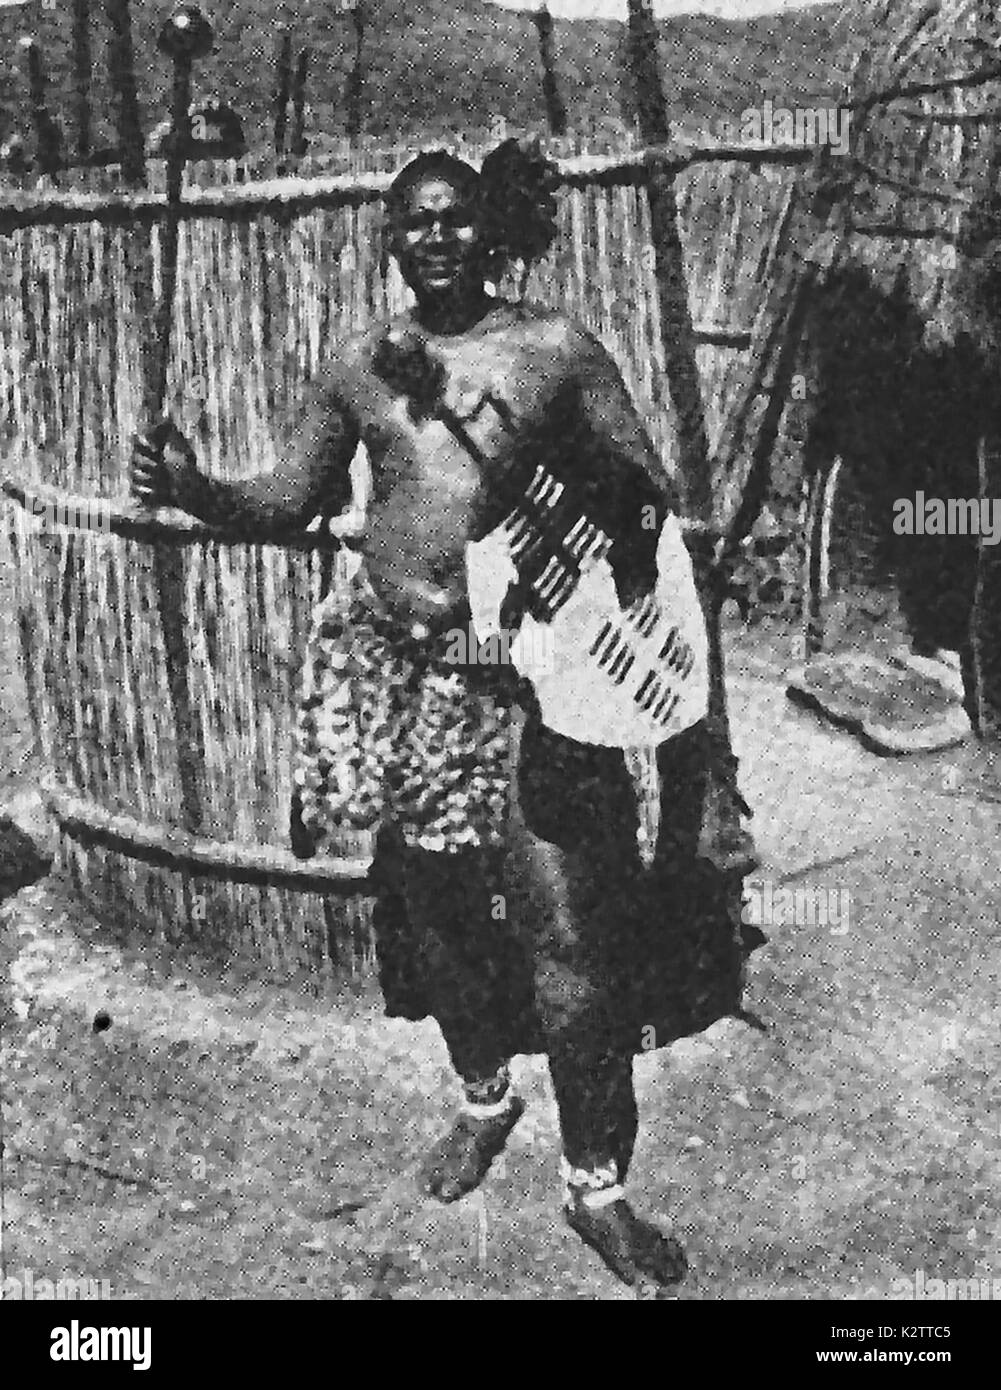 Ein 40er Magazin Foto, ein gebürtiger Zulu Krieger in einem geflochtenen Rock gekleidet und mit einer versteckten Fallen, Schild und Knopf - Kerri (Club). Er steht außerhalb seiner Corral mit seinem Bienenstock Hütte Wohnung. Stockfoto